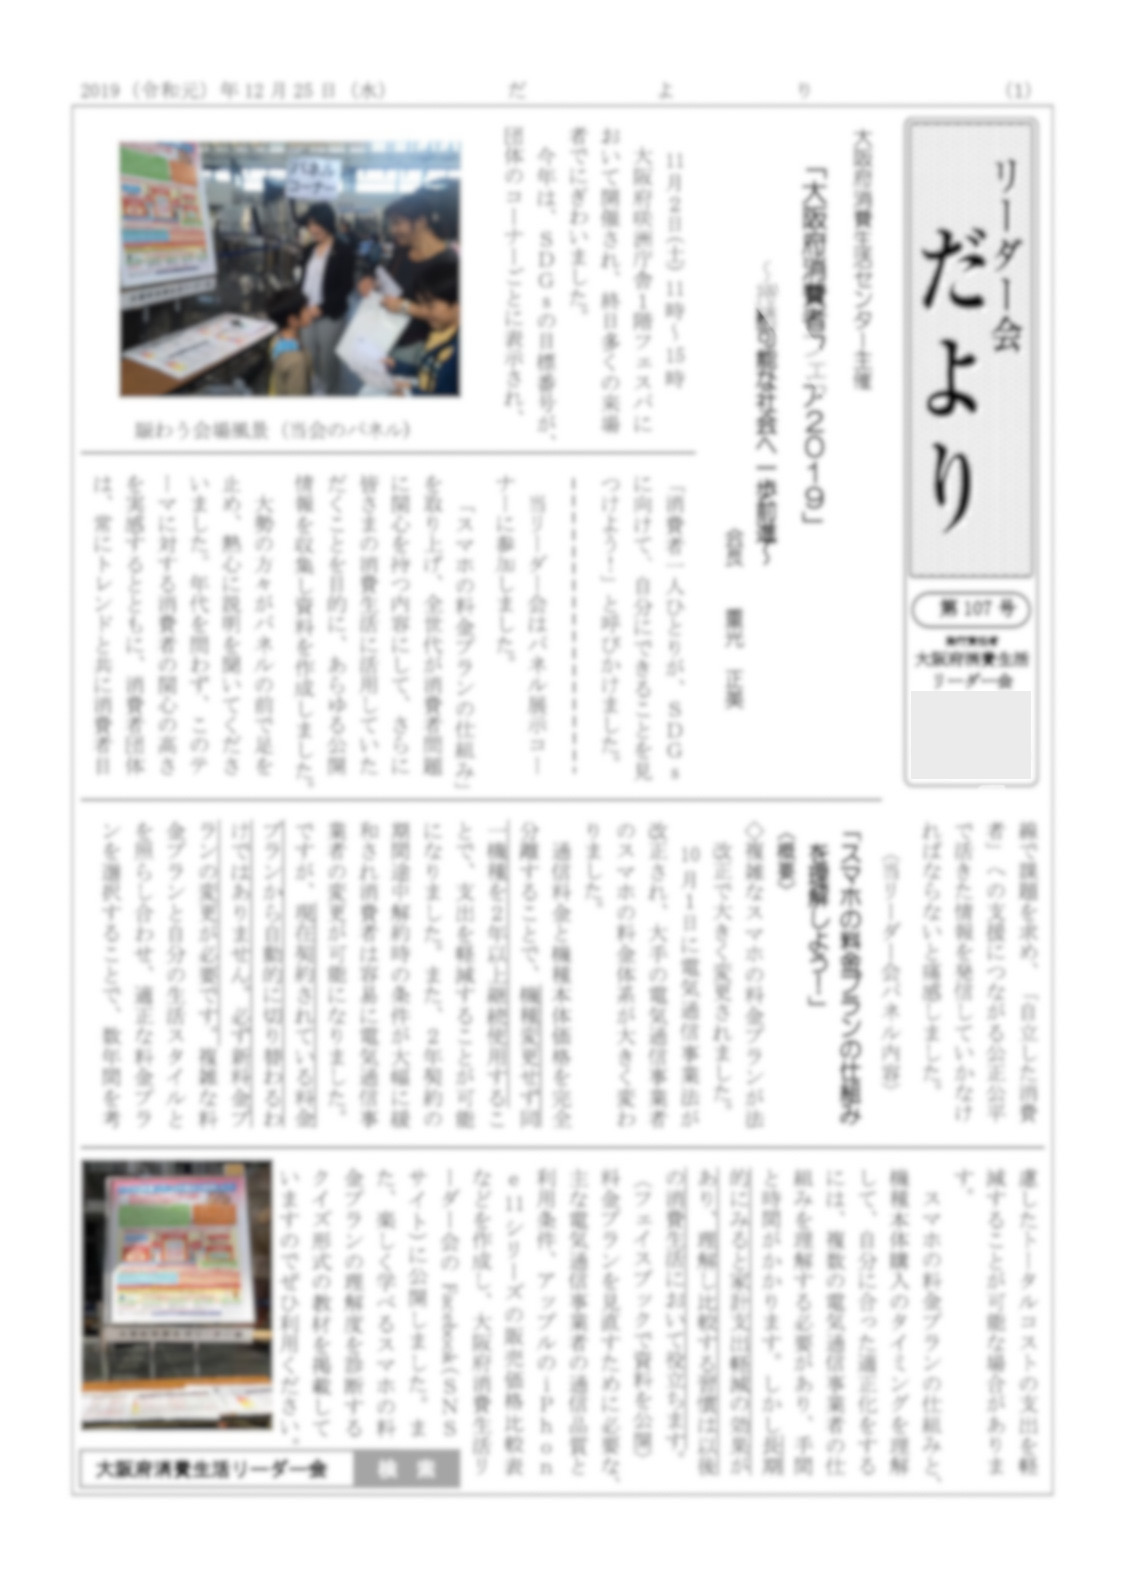 令和元年12月25日に、大阪府消費生活リーダー会の会員や消費者団体や消費者行政向けの会報紙｢だより｣107号を発行しました。